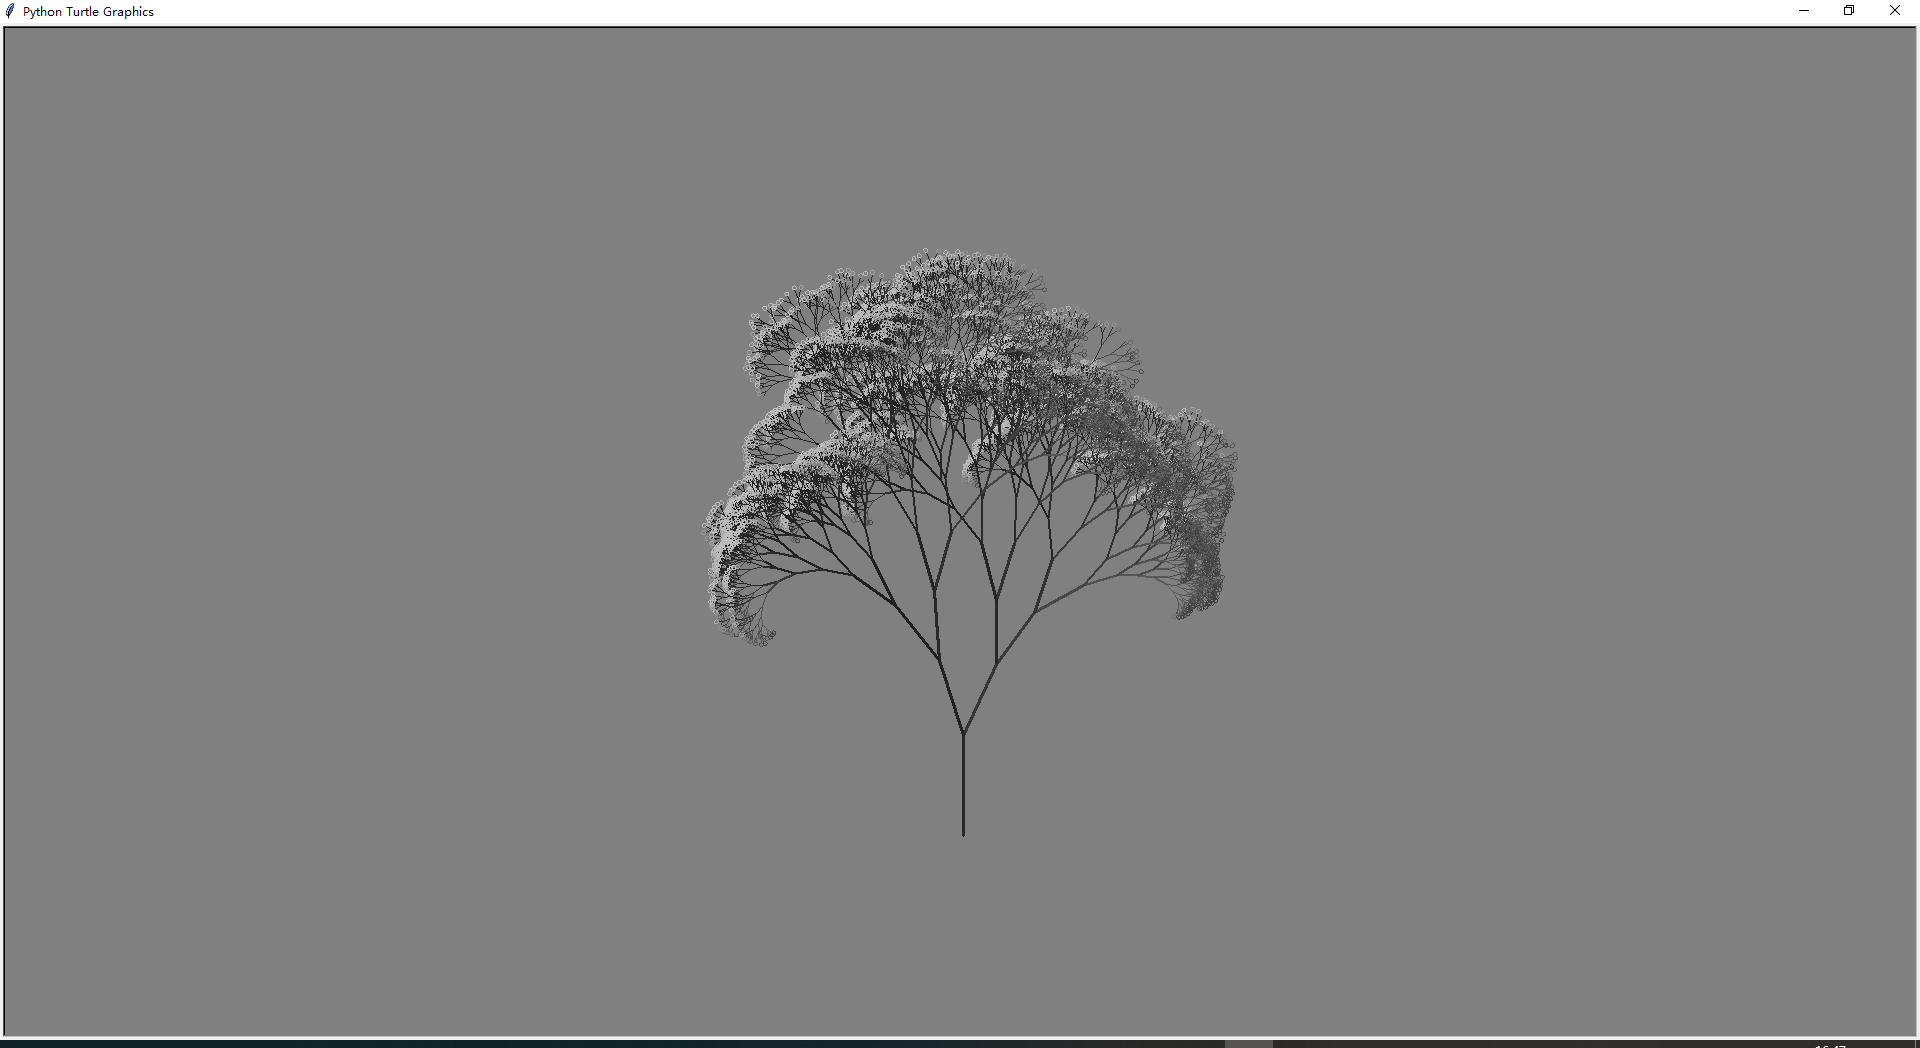 用pythonturtle库作图可以画出哪些漂亮的树